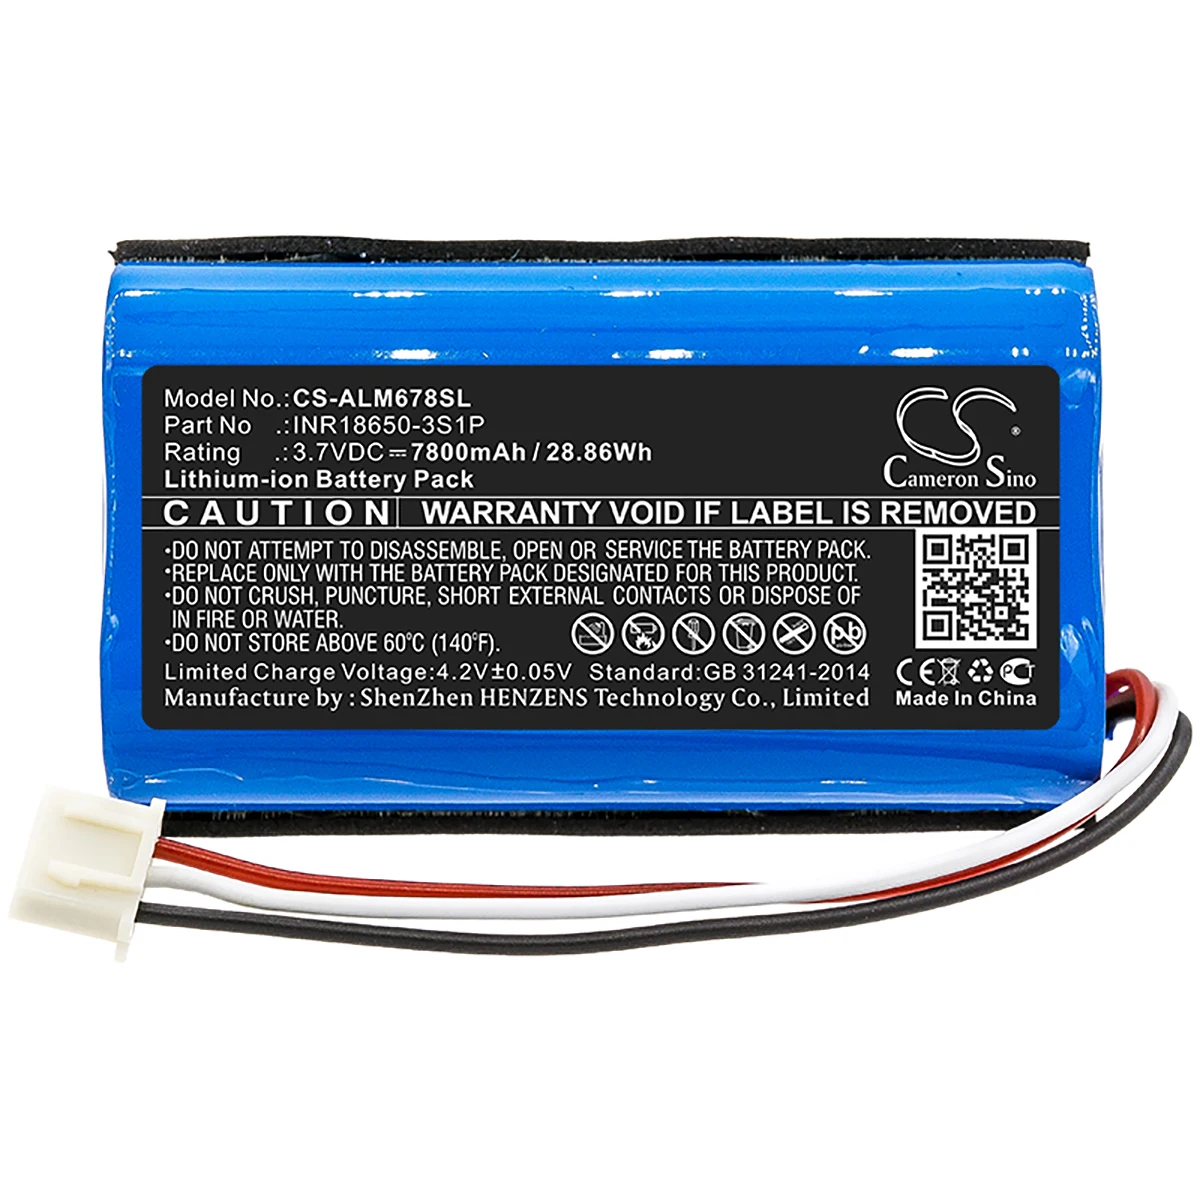 

Cameron Sino 7800mA Battery for Altec Lansing iMW678, iMW678-BLK, iMW678-BLU, IMW789, IMW789-BLG INR18650-3S1P